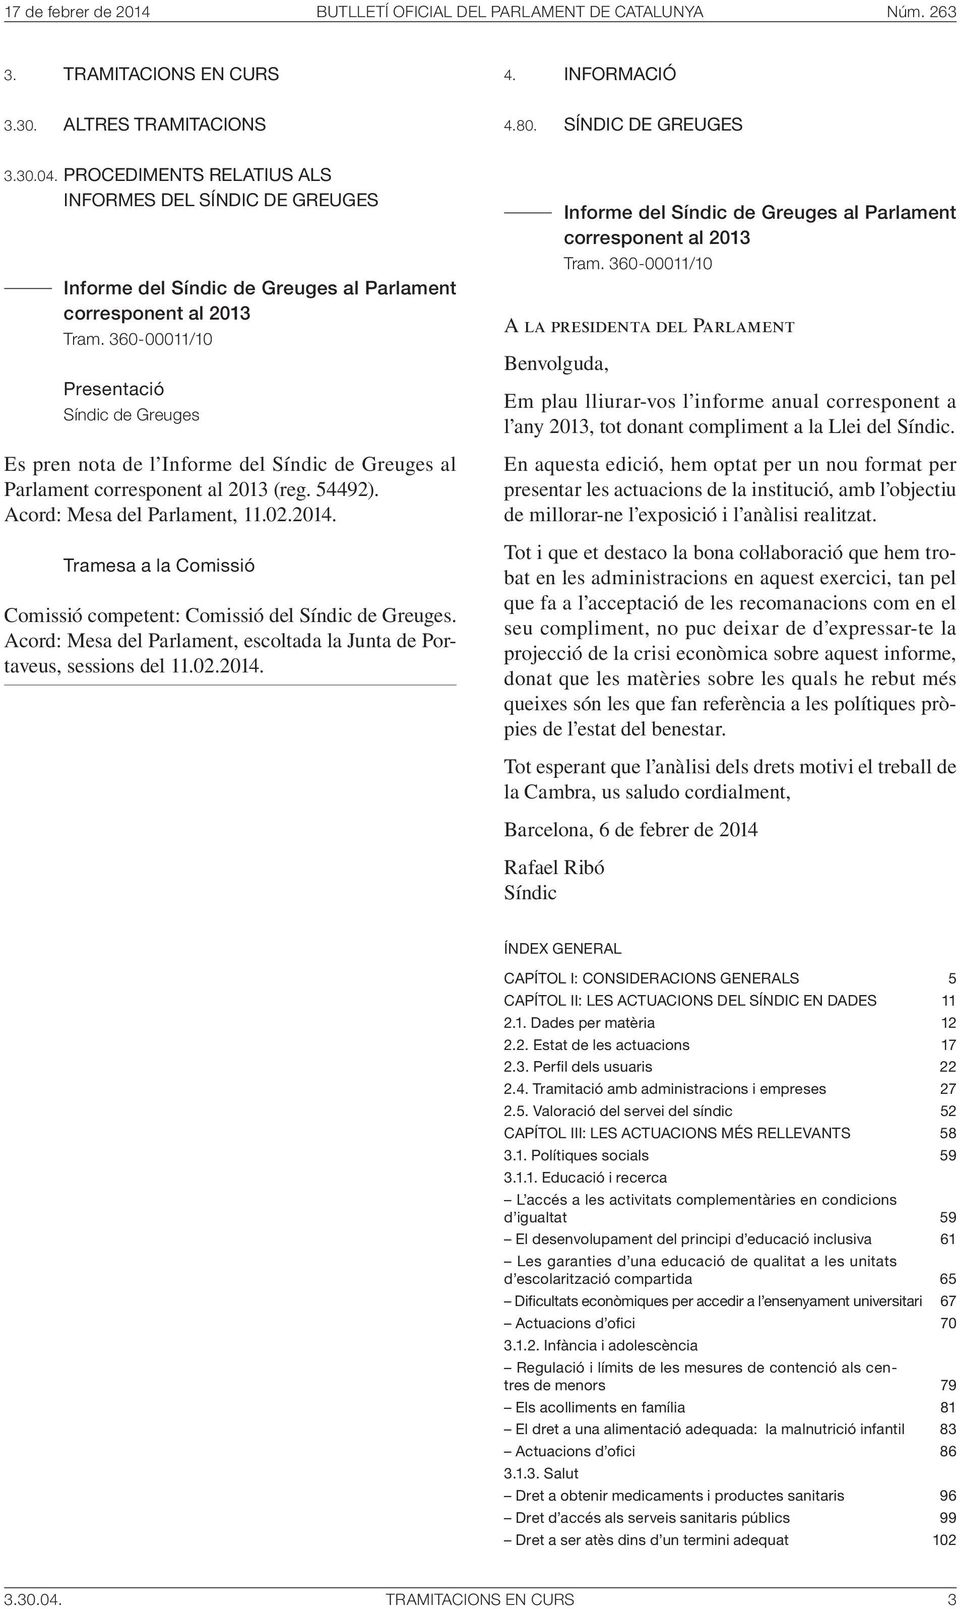 360-00011/10 Presentació Síndic de Greuges Es pren nota de l Informe del Síndic de Greuges al Parlament corresponent al 2013 (reg. 54492). Acord: Mesa del Parlament, 11.02.2014.